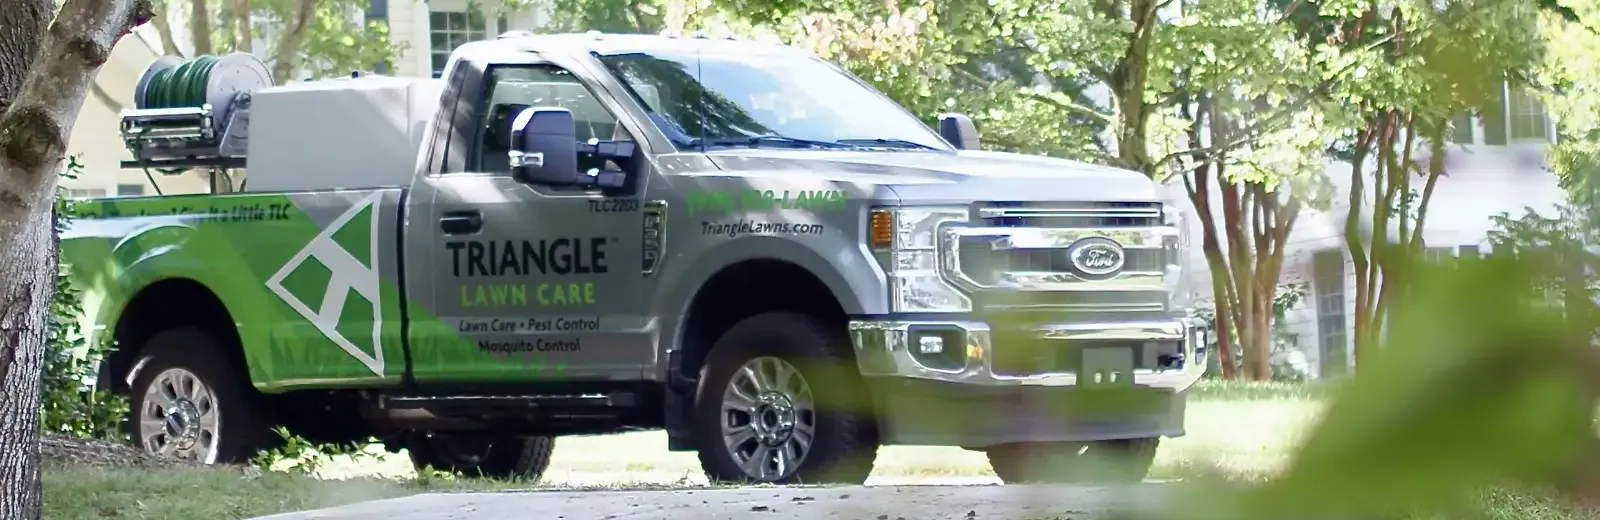 Triangle Lawn Care Truck